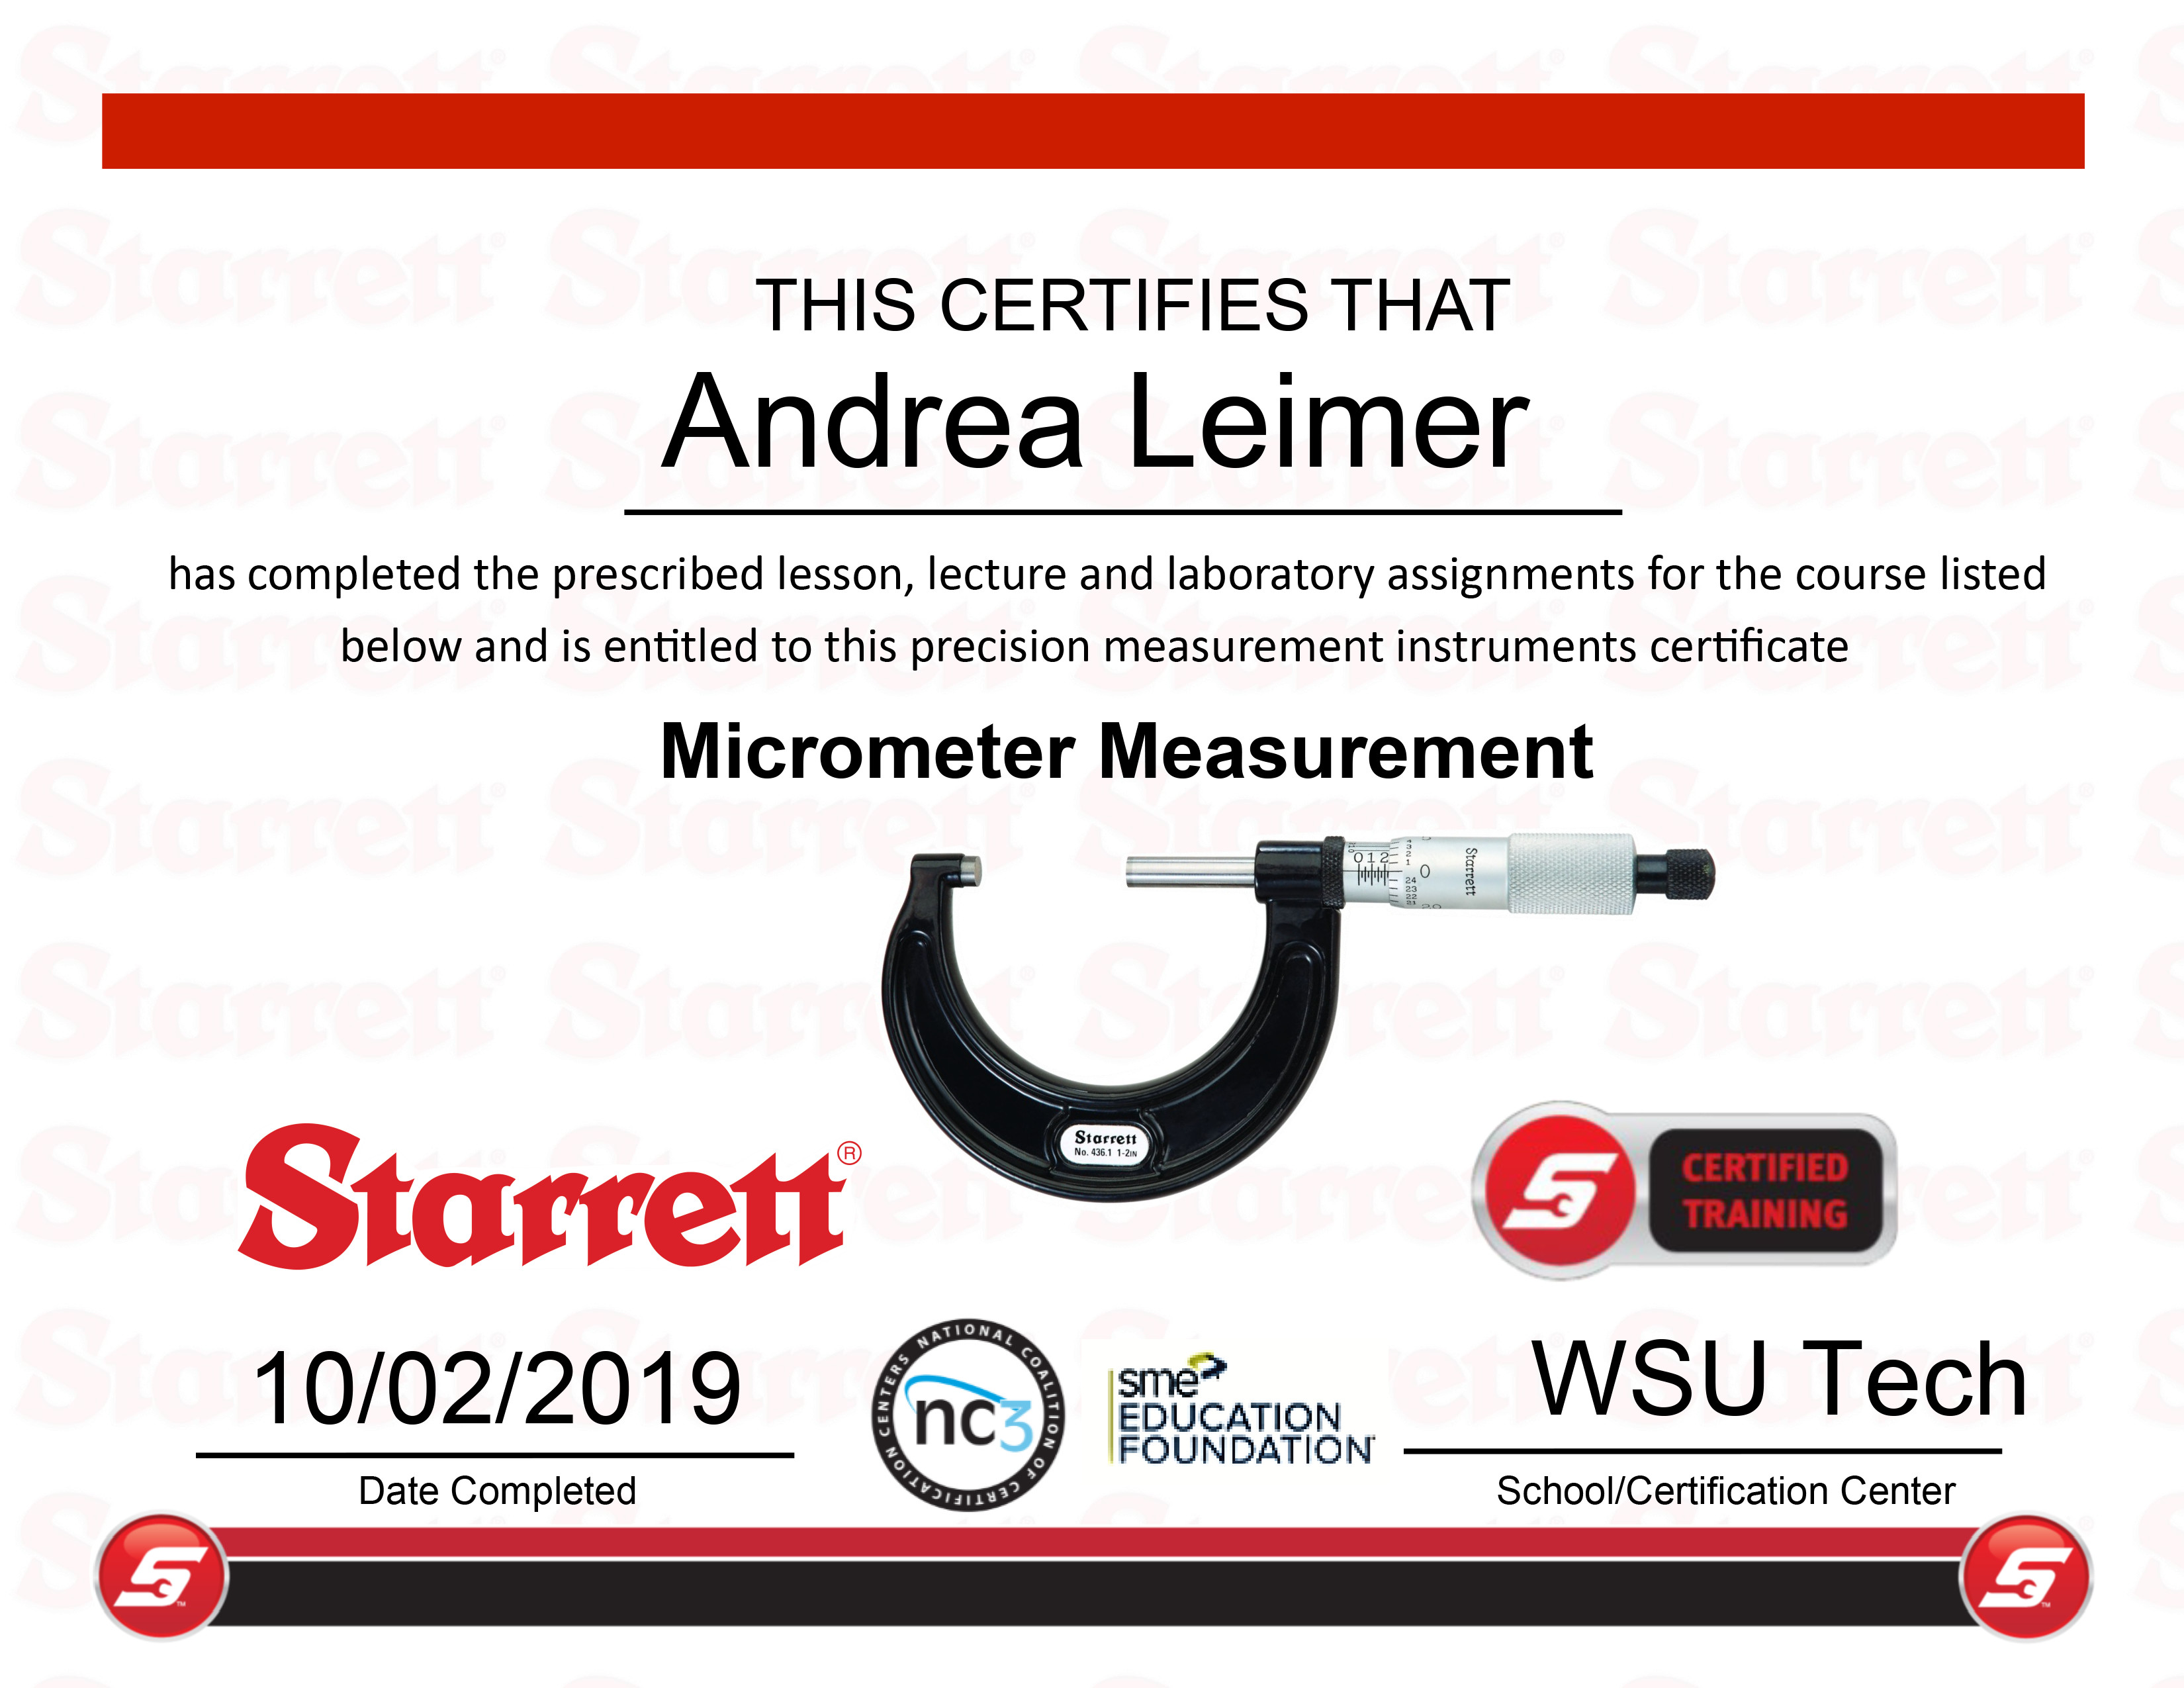 Micrometer Measurement Certification